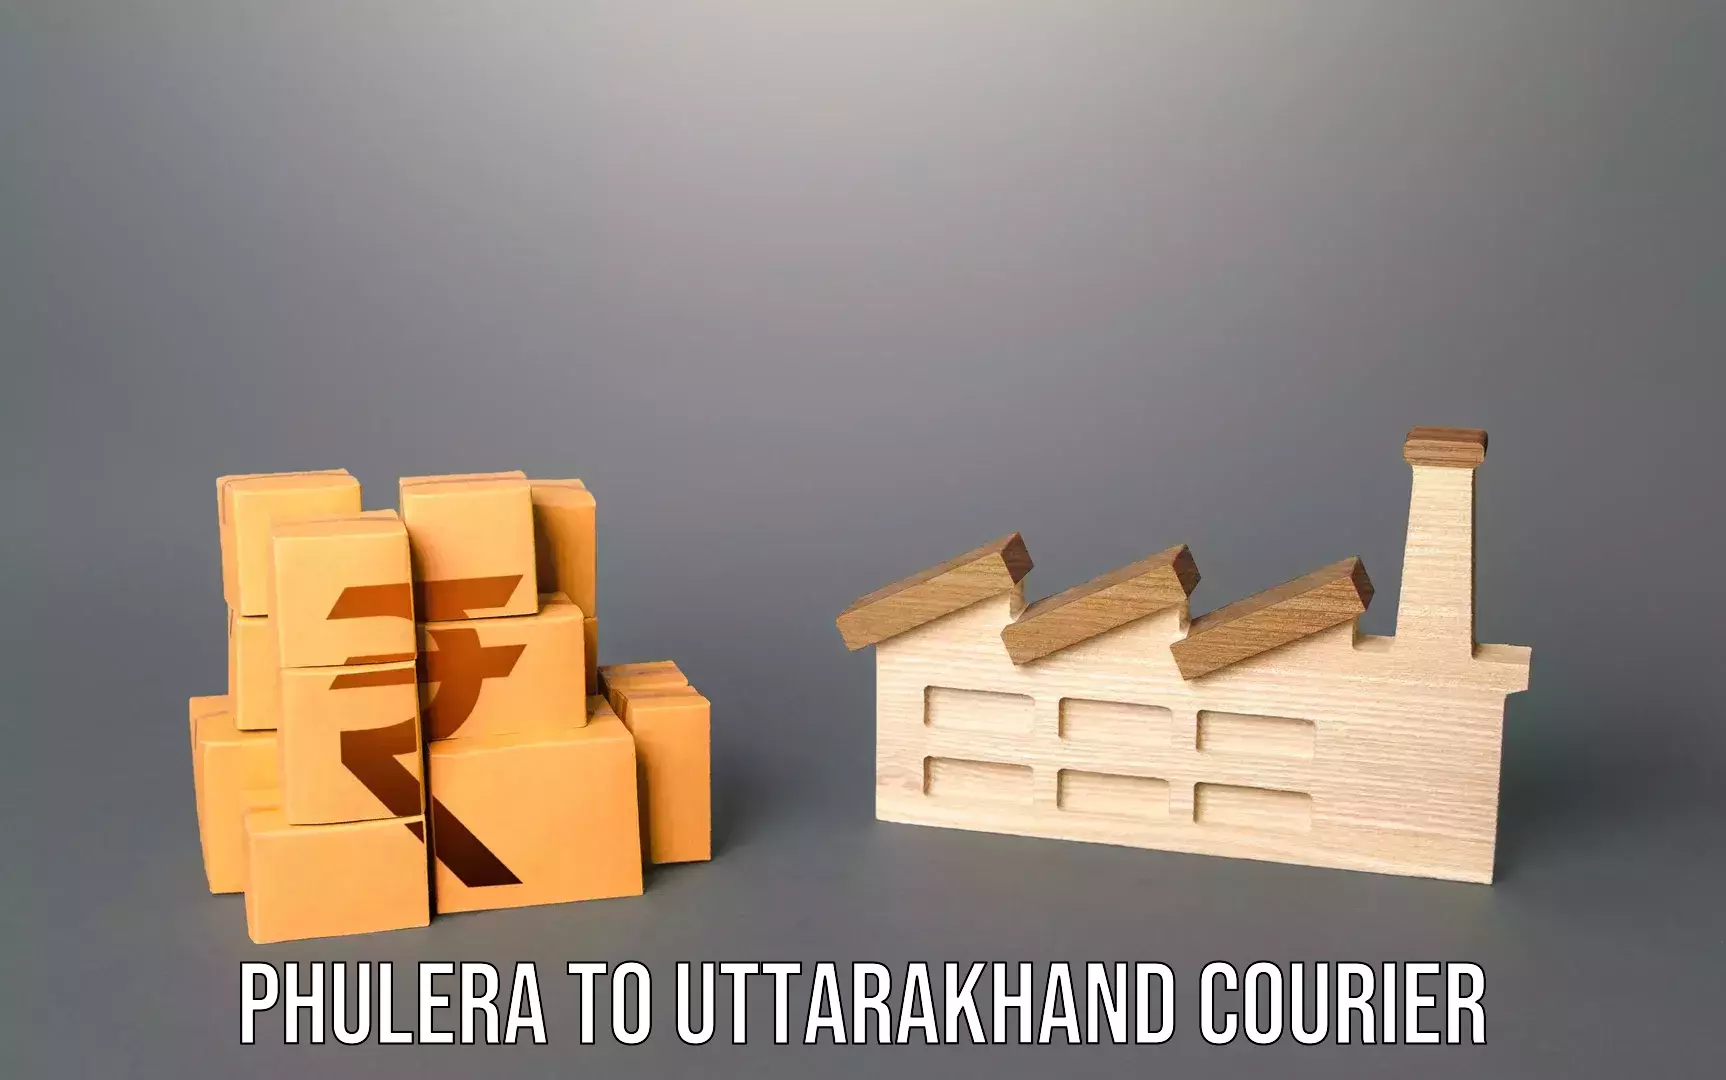 Luggage transport company Phulera to Uttarakhand